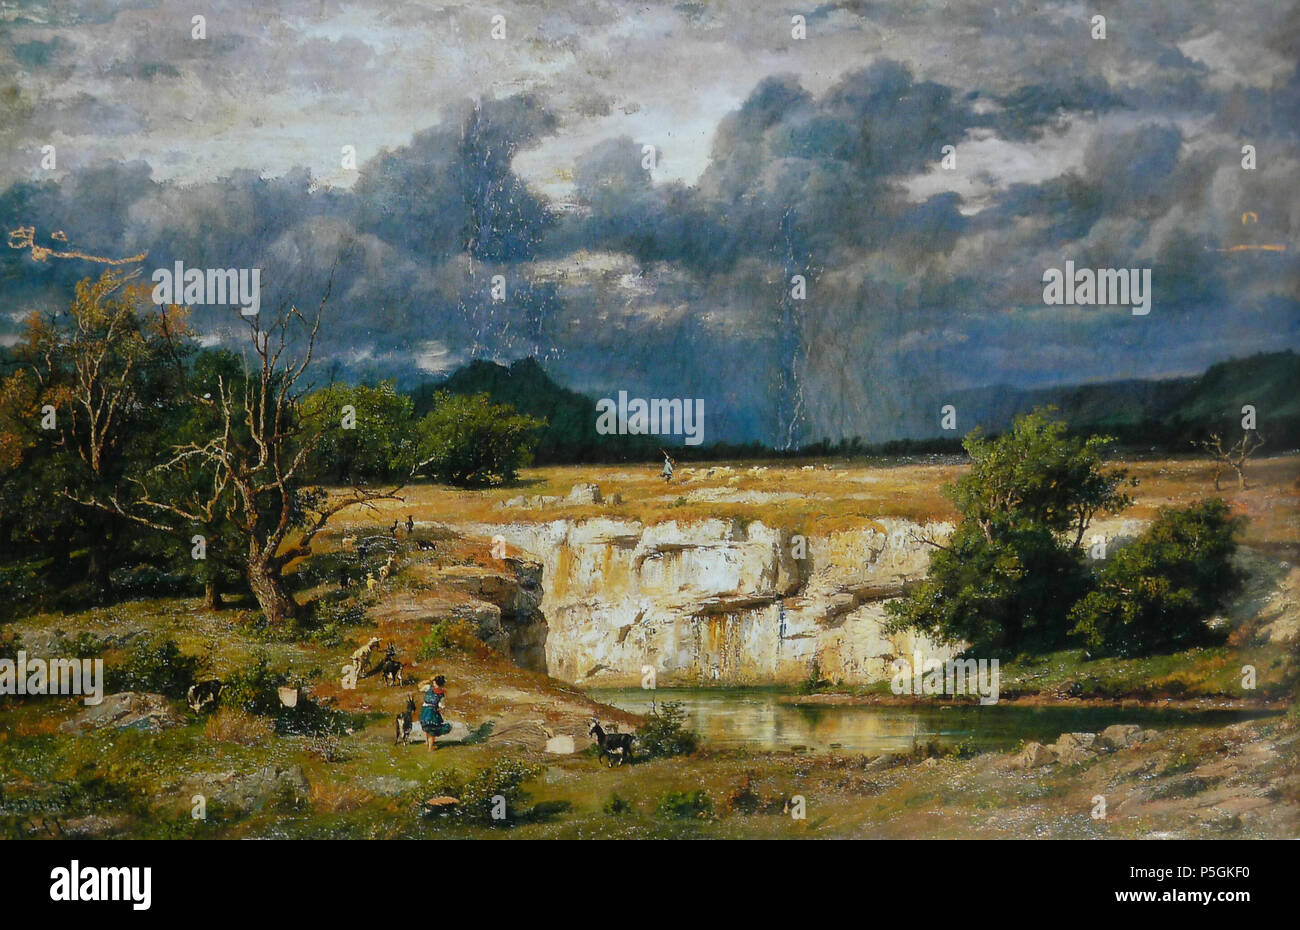 N/A. Coup de soleil Avant l'orage, huile sur toile par Antonin Fanard, 1861, 136 x 216 cm. Musée des Beaux-Arts de Besançon. 1861. Antonin Fanart 548 Fanart Coup de soleil Avant l'orage 1861 Stockfoto